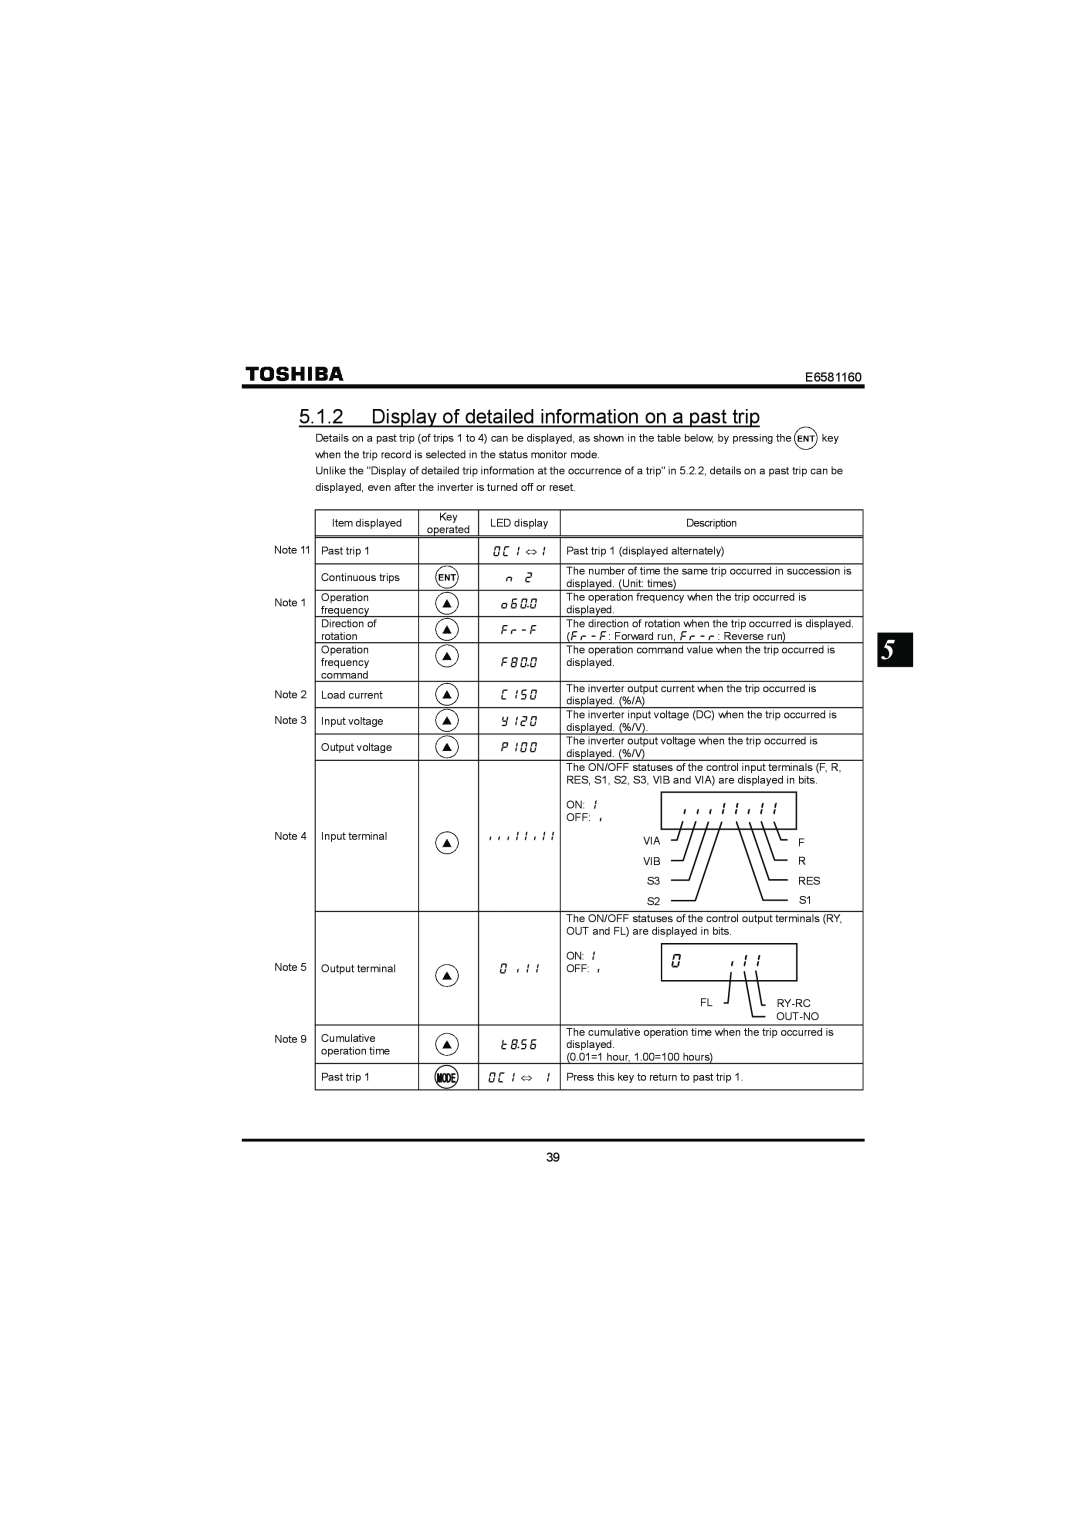 Toshiba VF-S11 manual E6581160, Mode 